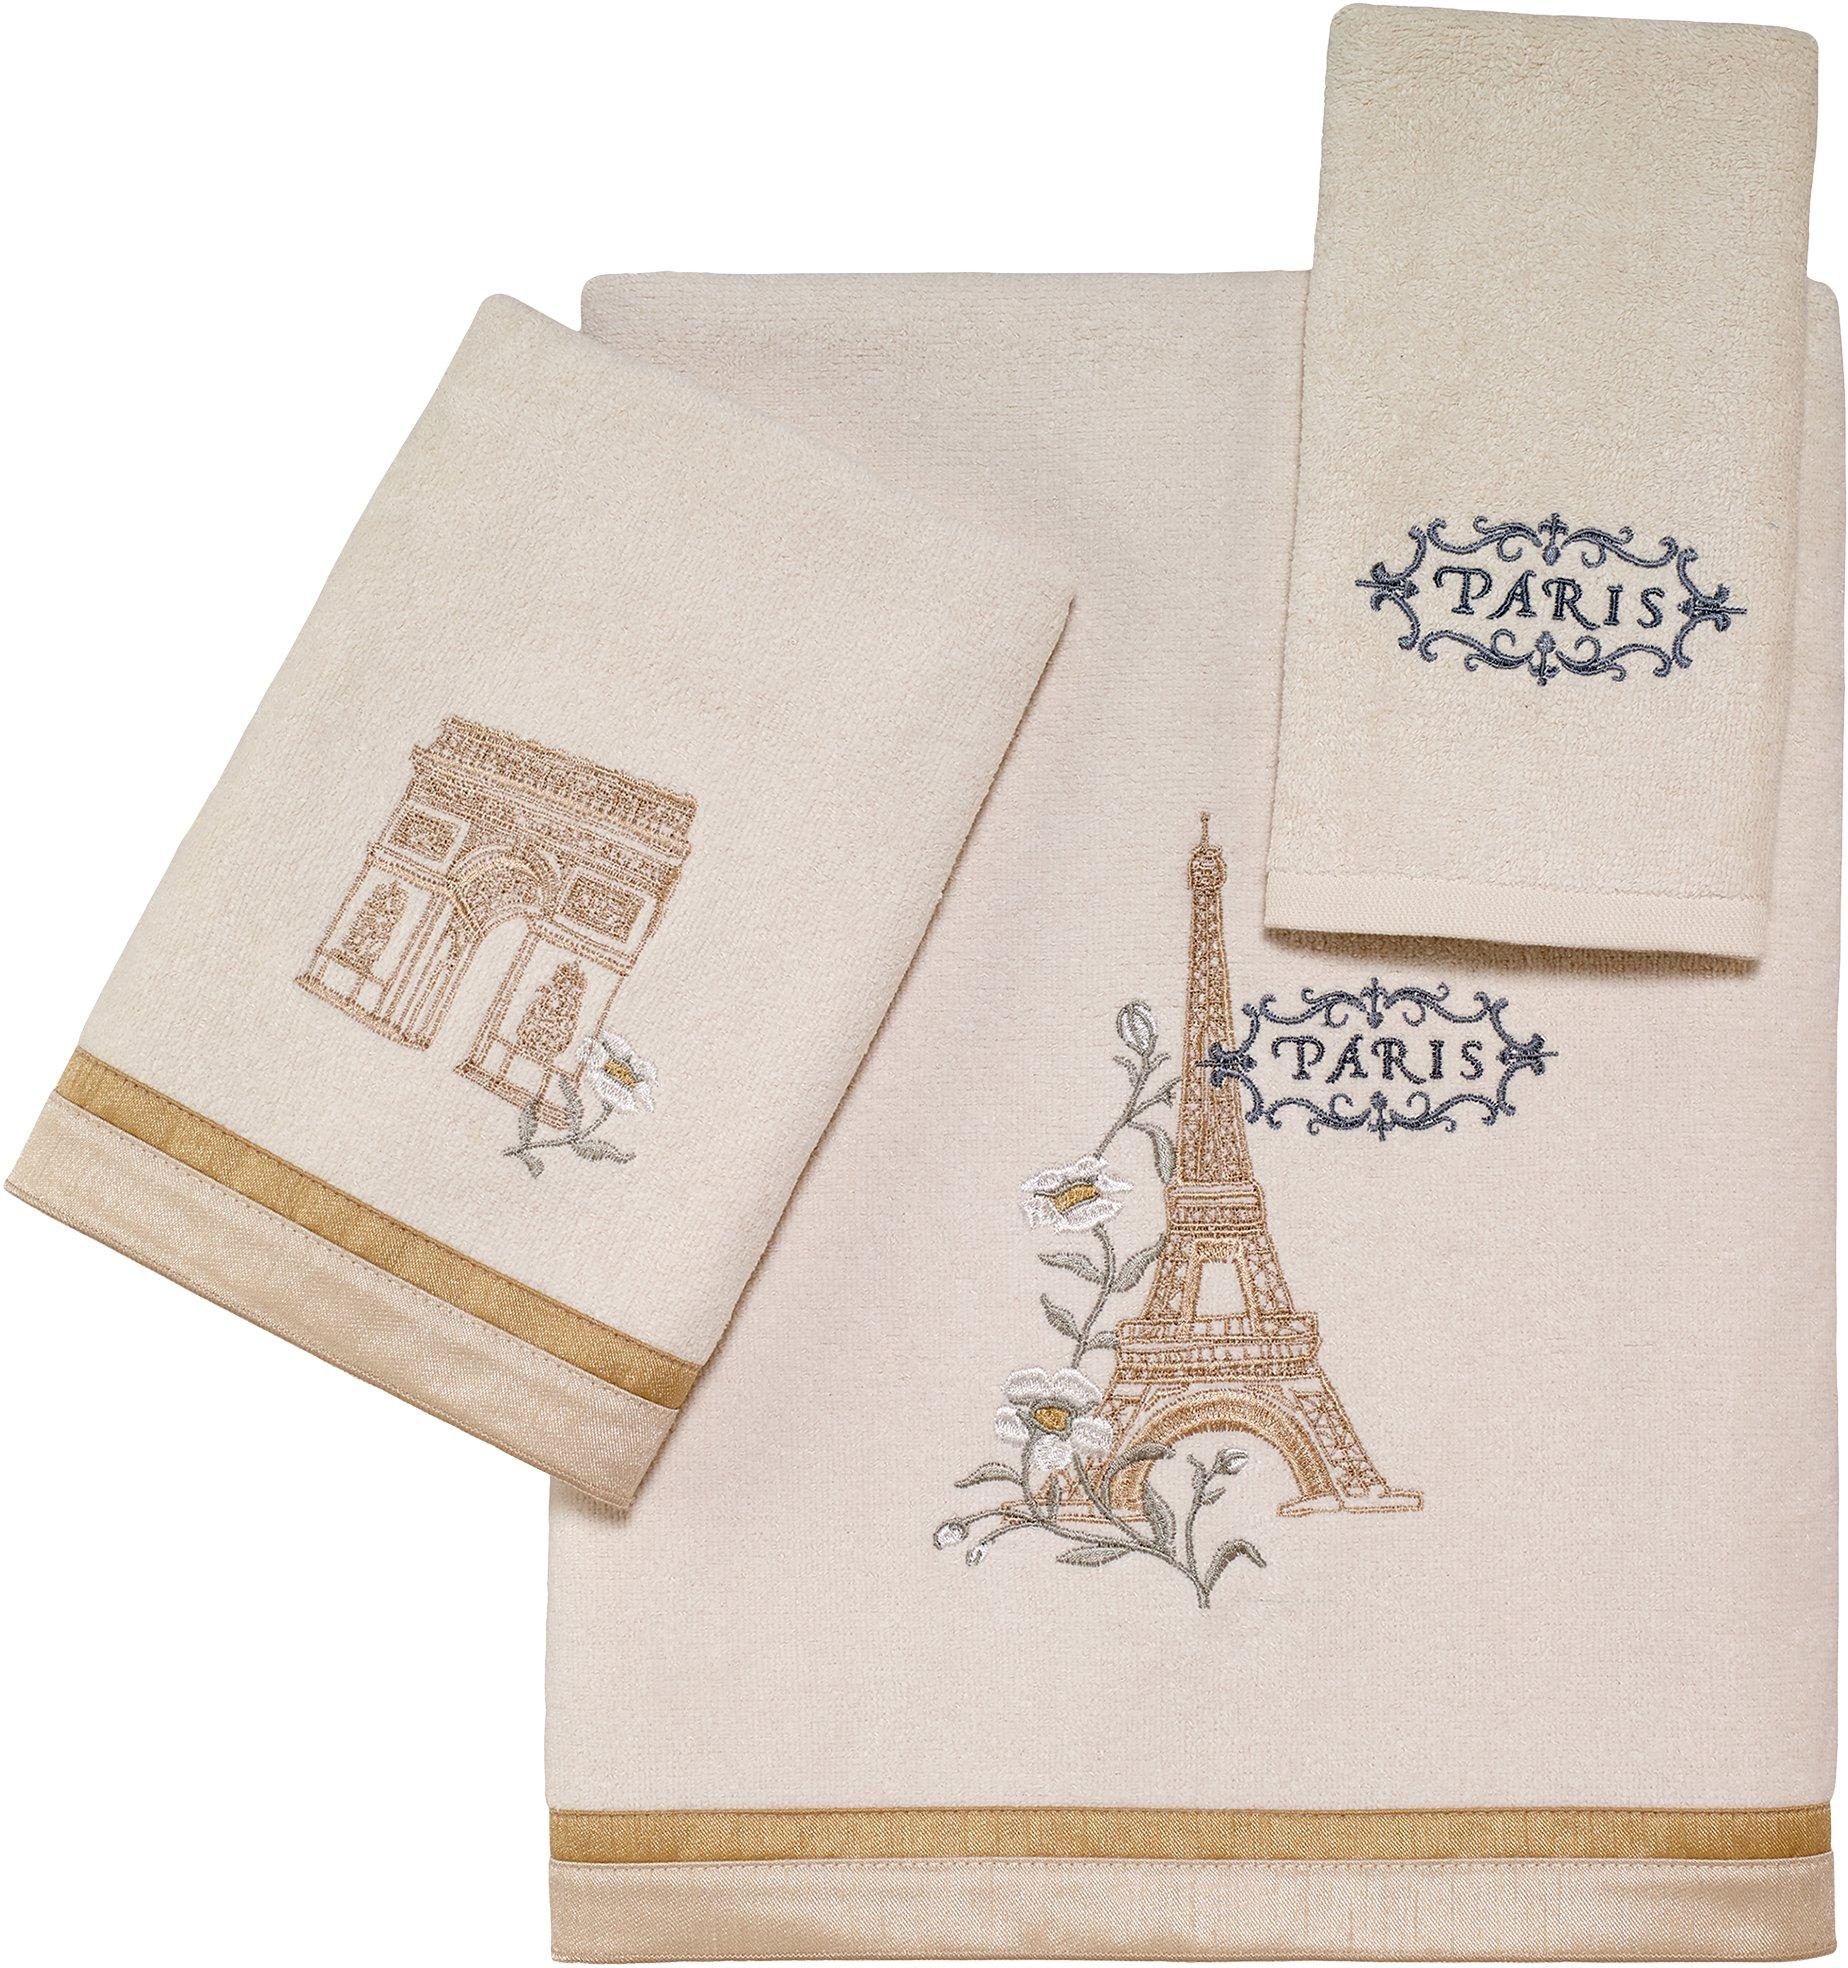 Avanti Paris Botanique Towel Collection